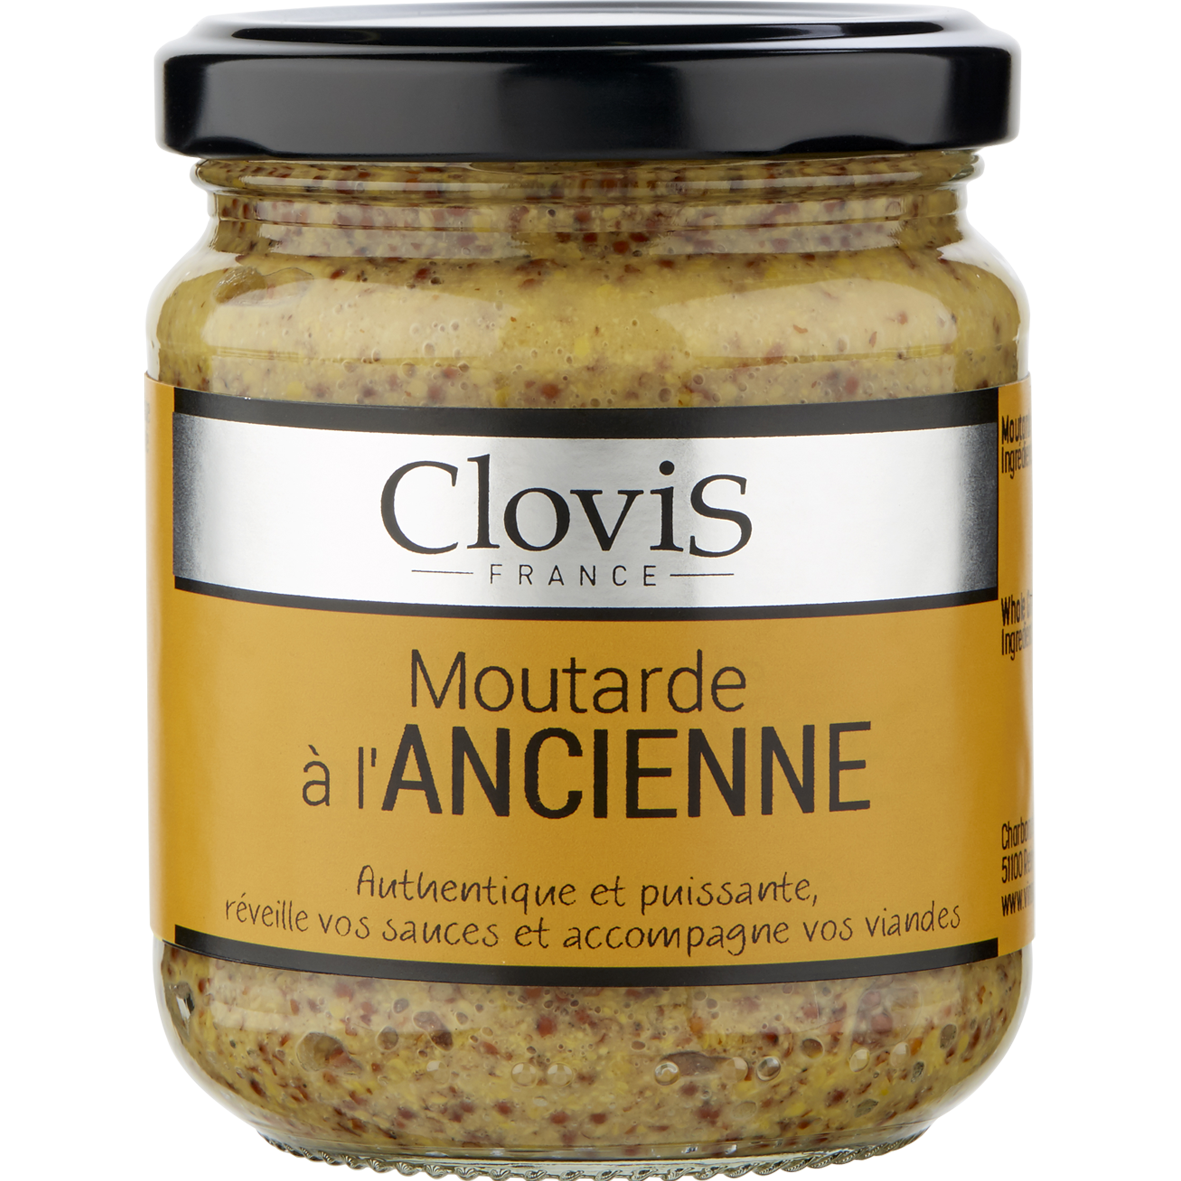 moutarde ancienne  200g de la marque Clovis avec étiquette marron sur laquelle on retrouve la marque Clovis, l'intitulé de la moutarde et les ingrédients